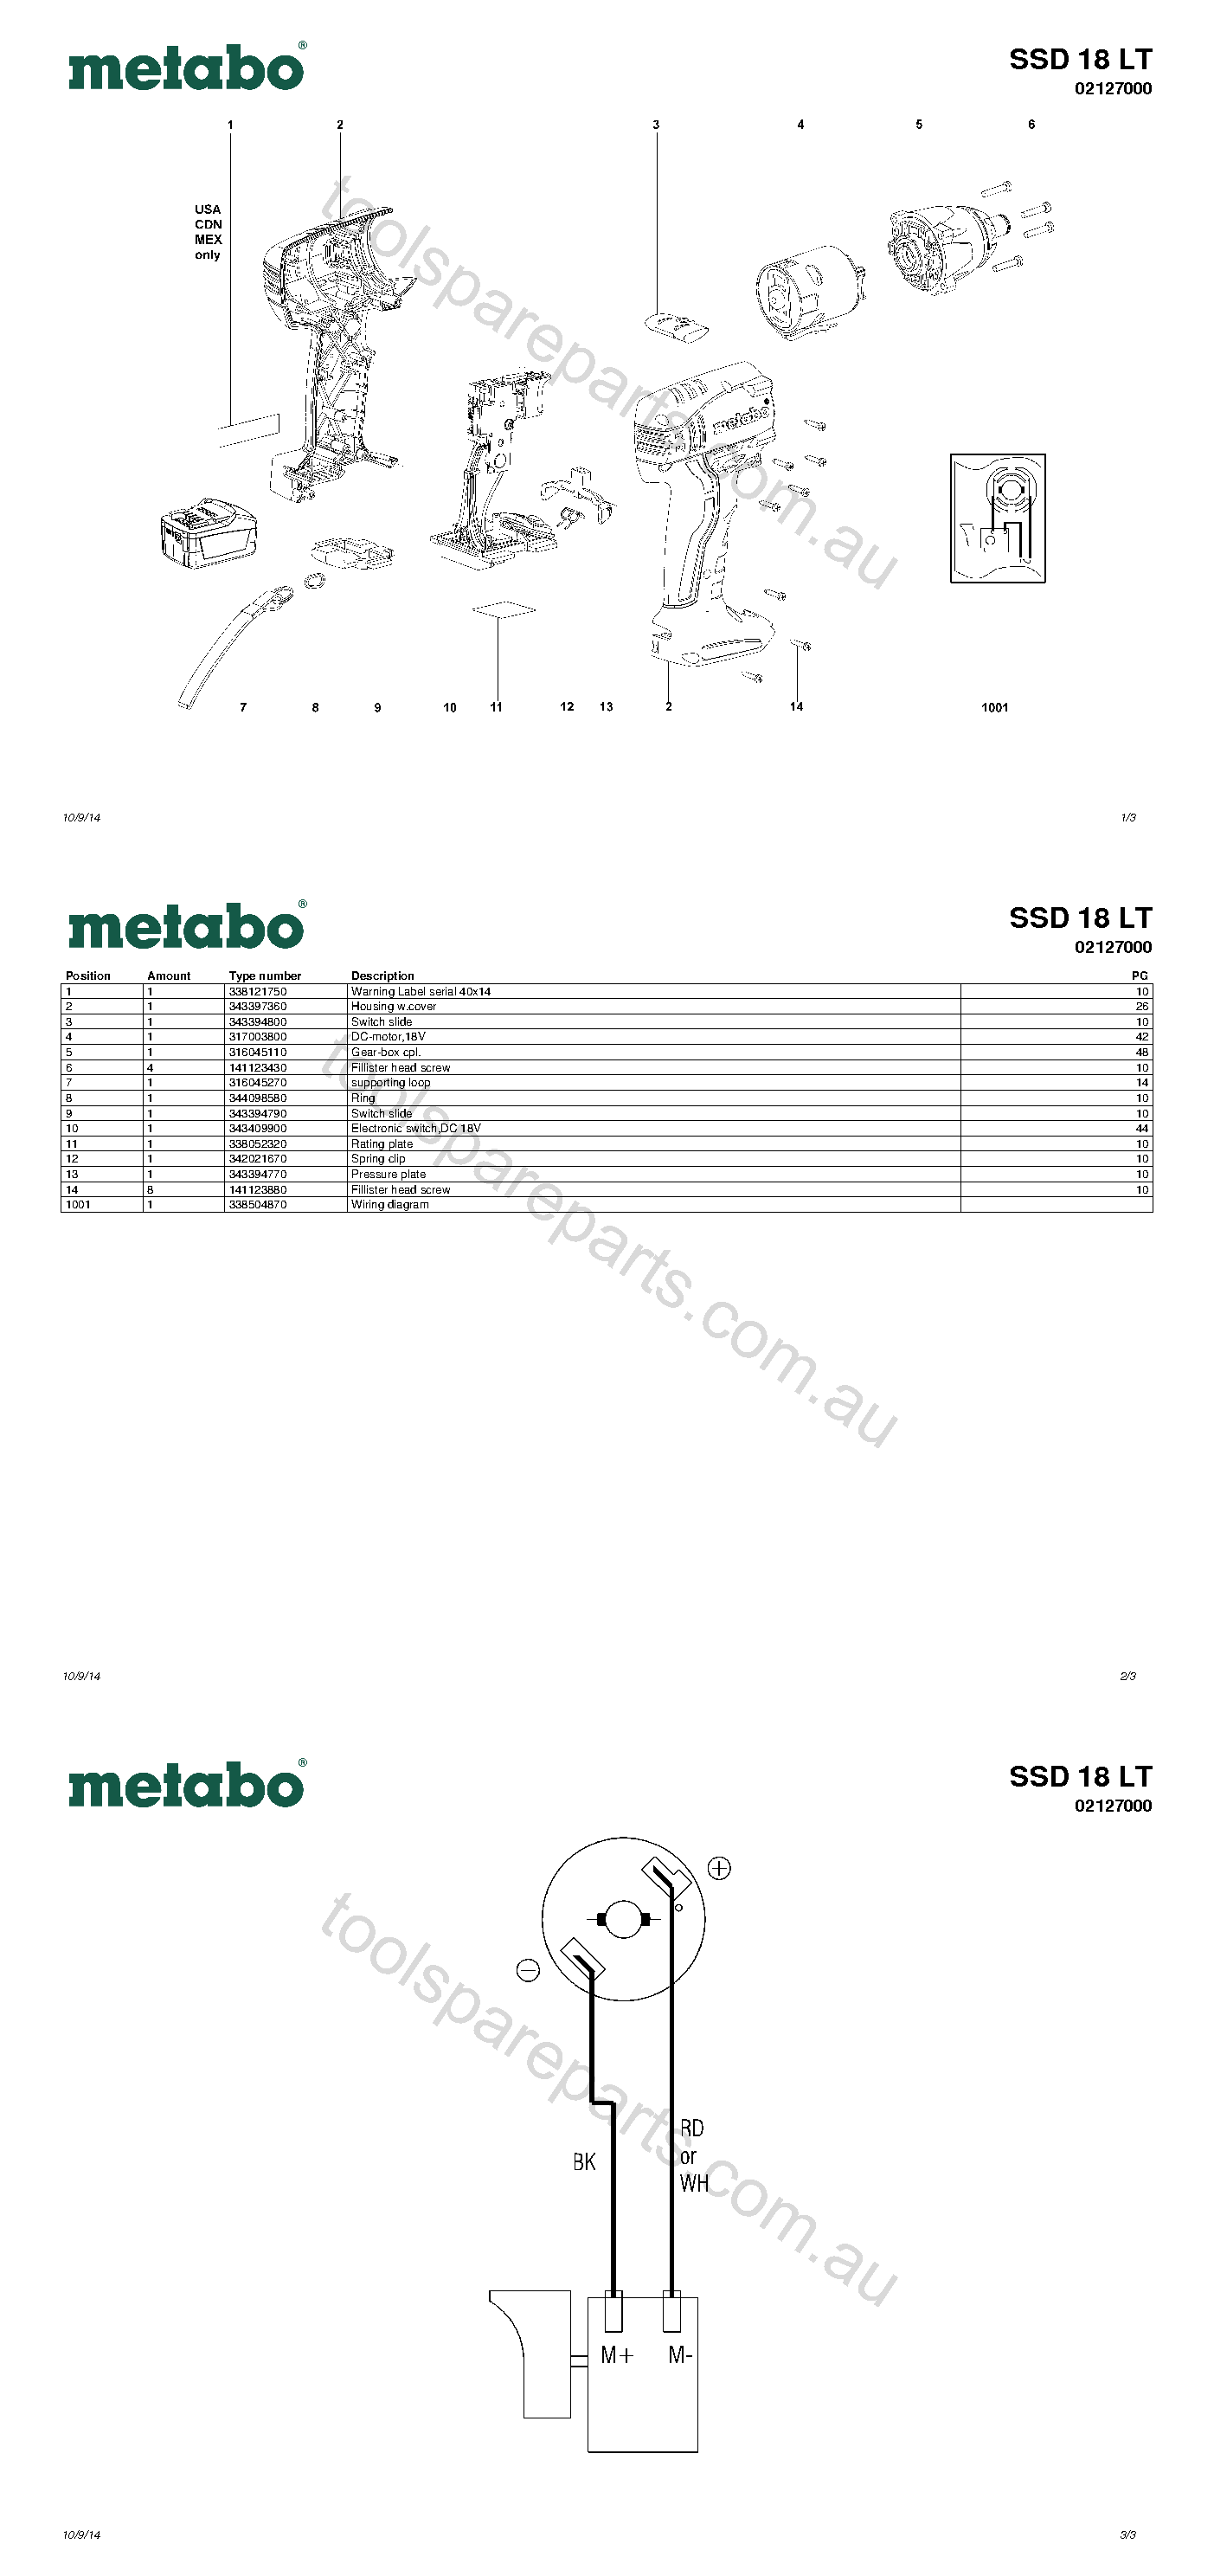 Metabo SSD 18 LT 02127000  Diagram 1